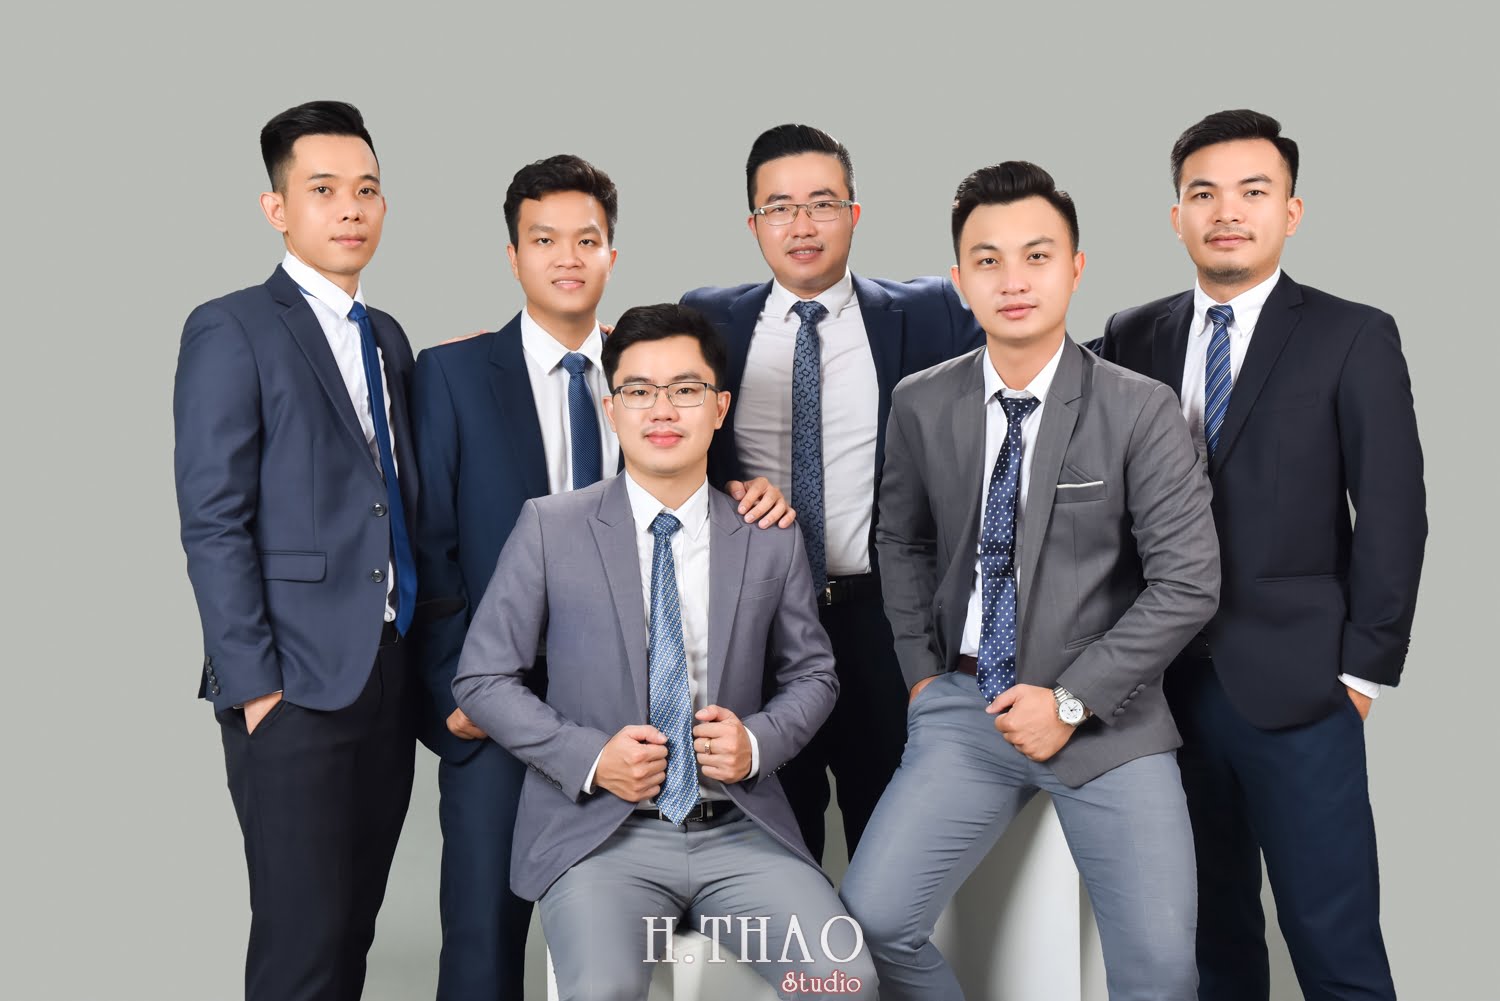 Anh profile cong ty 11 - Báo giá chụp ảnh doanh nhân